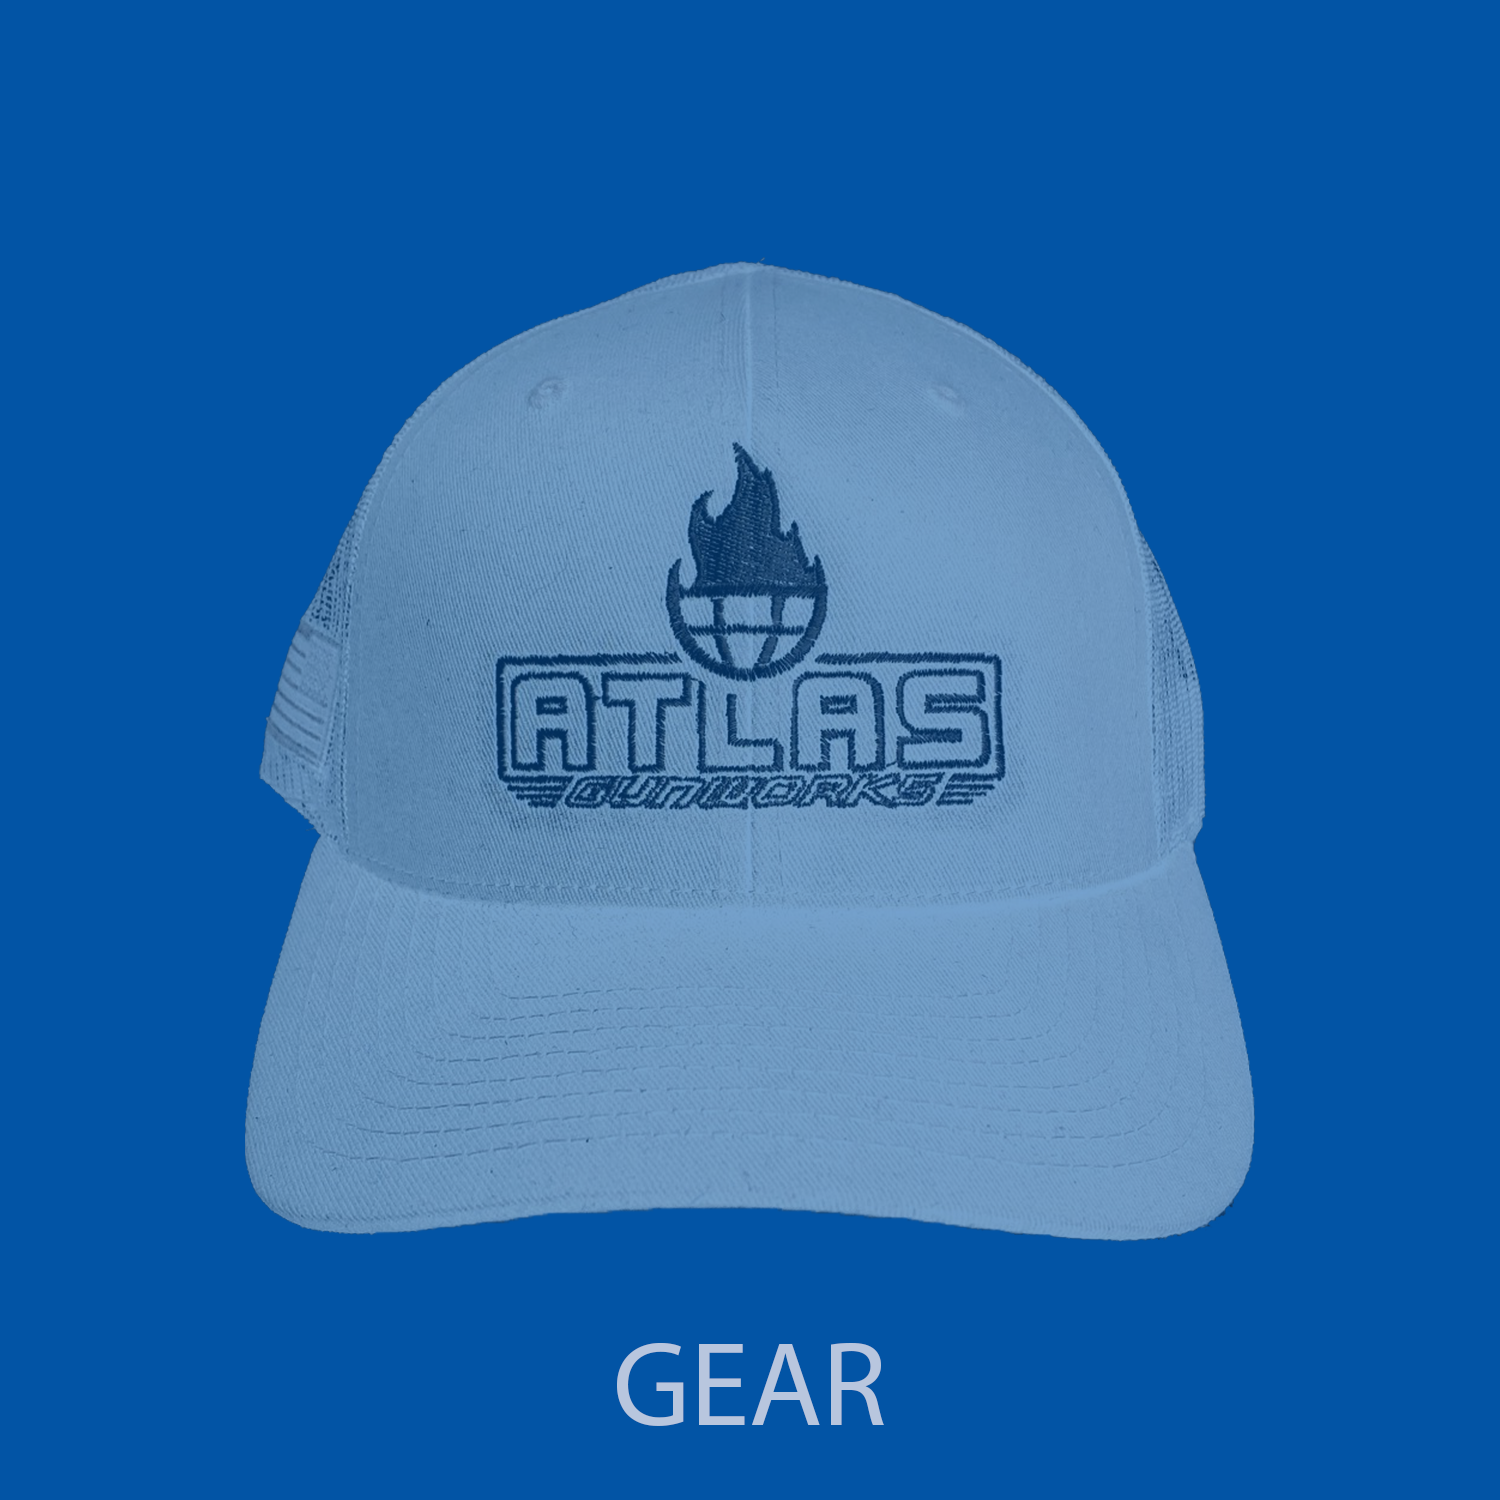 Atlas Gunworks hat, image links to our Atlas Gunworks gear page.